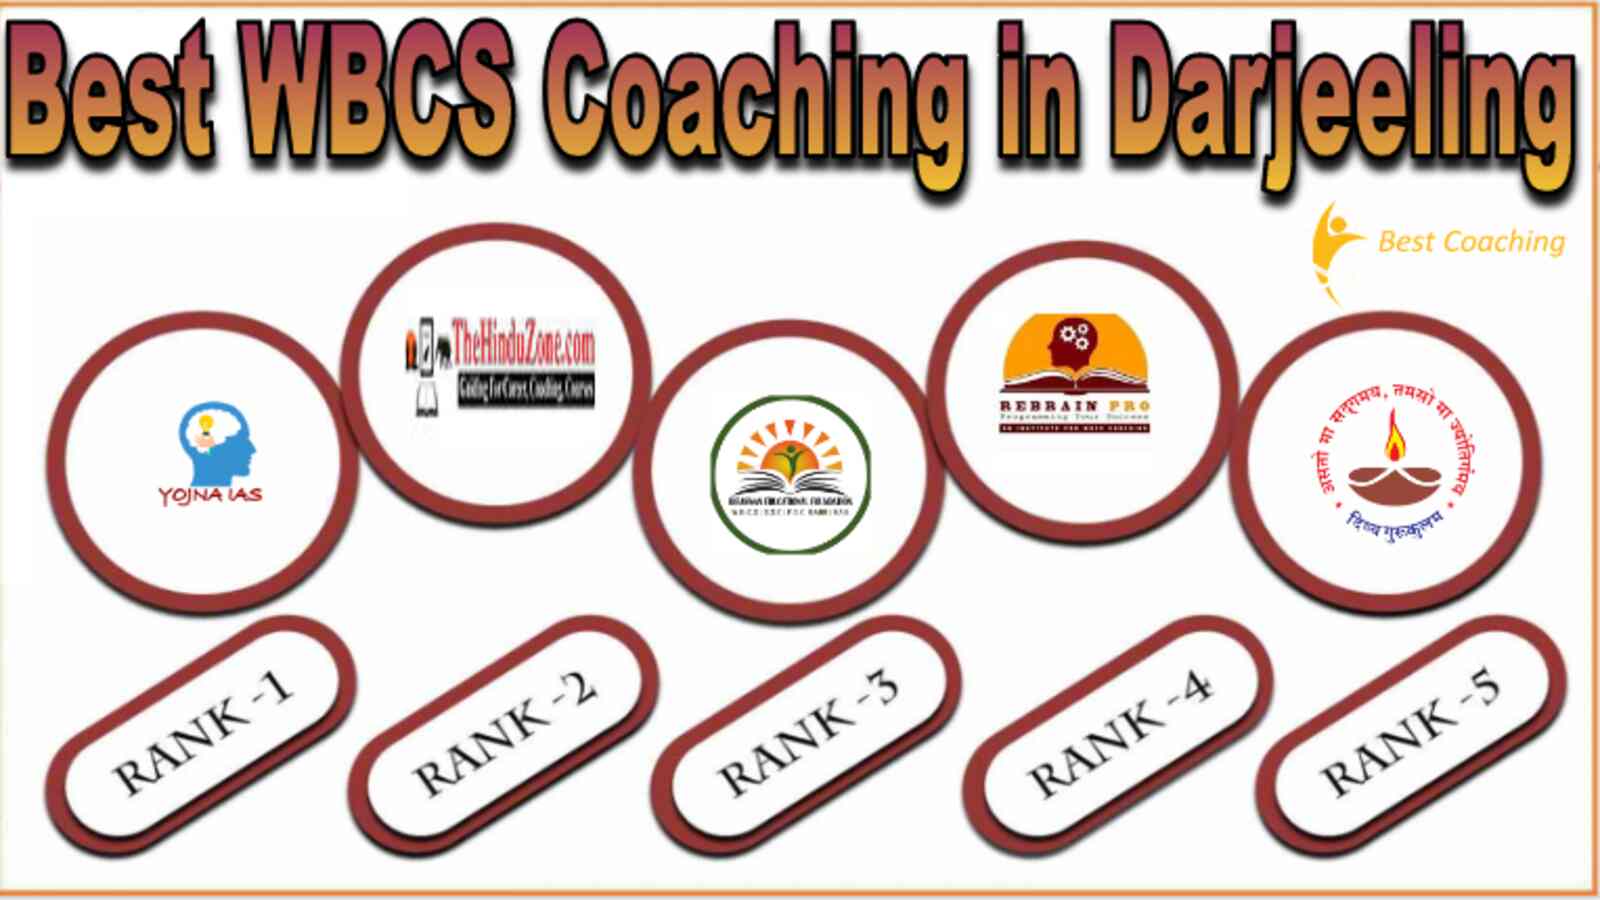 Best WBCS Coaching in Darjeeling